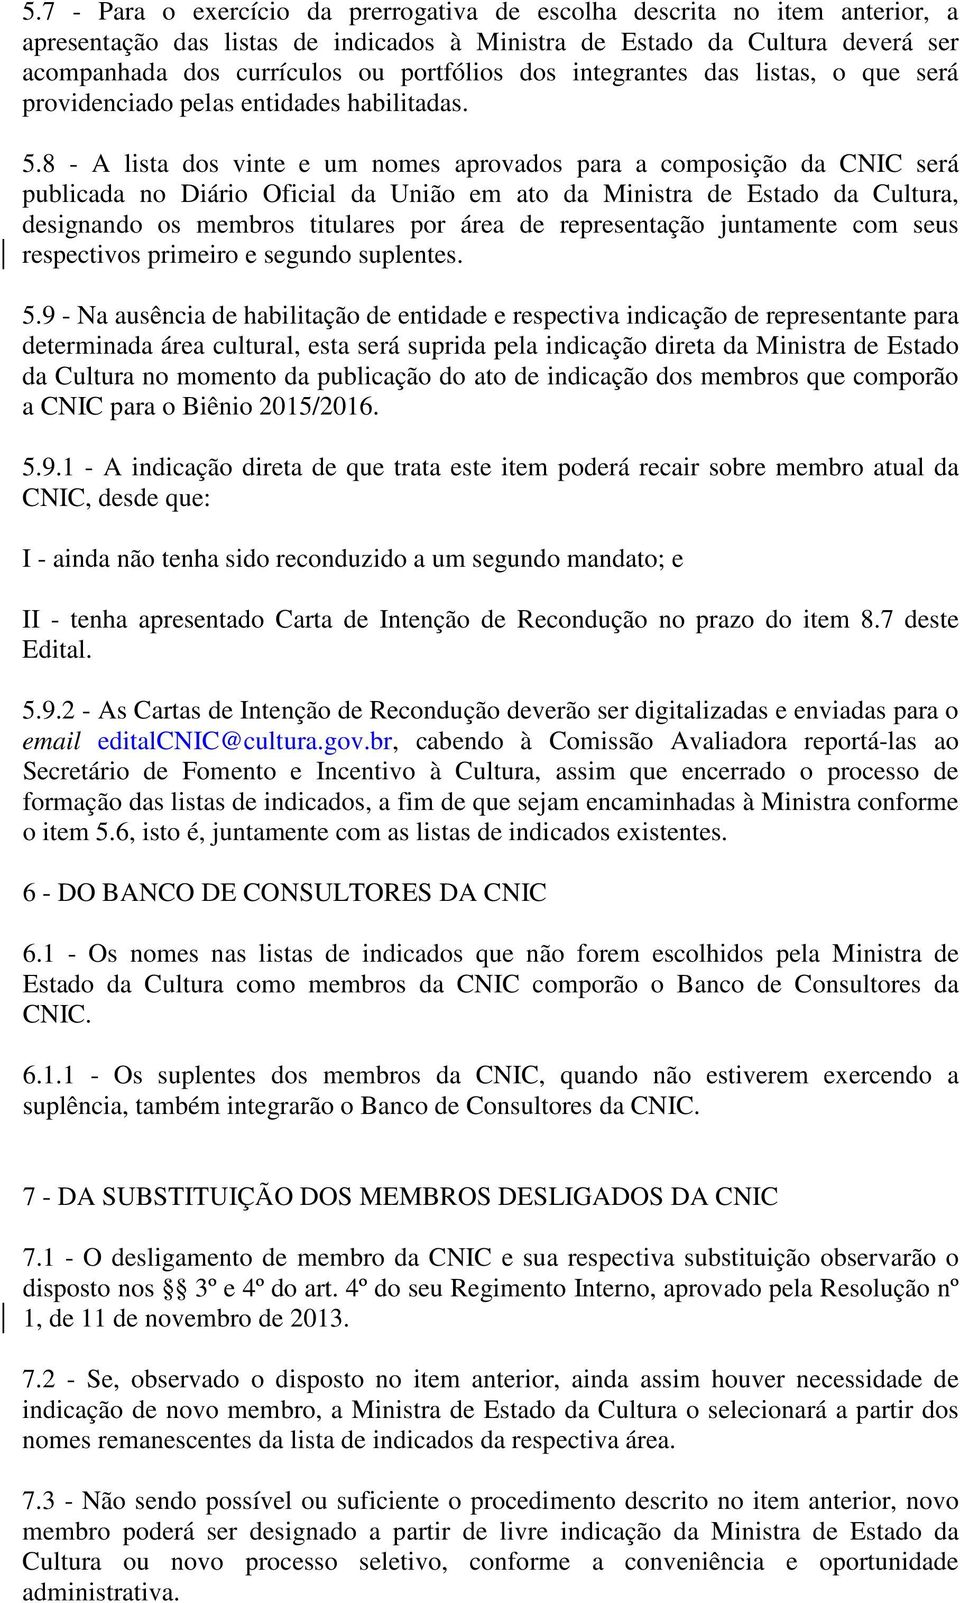 8 - A lista dos vinte e um nomes aprovados para a composição da CNIC será publicada no Diário Oficial da União em ato da Ministra de Estado da Cultura, designando os membros titulares por área de